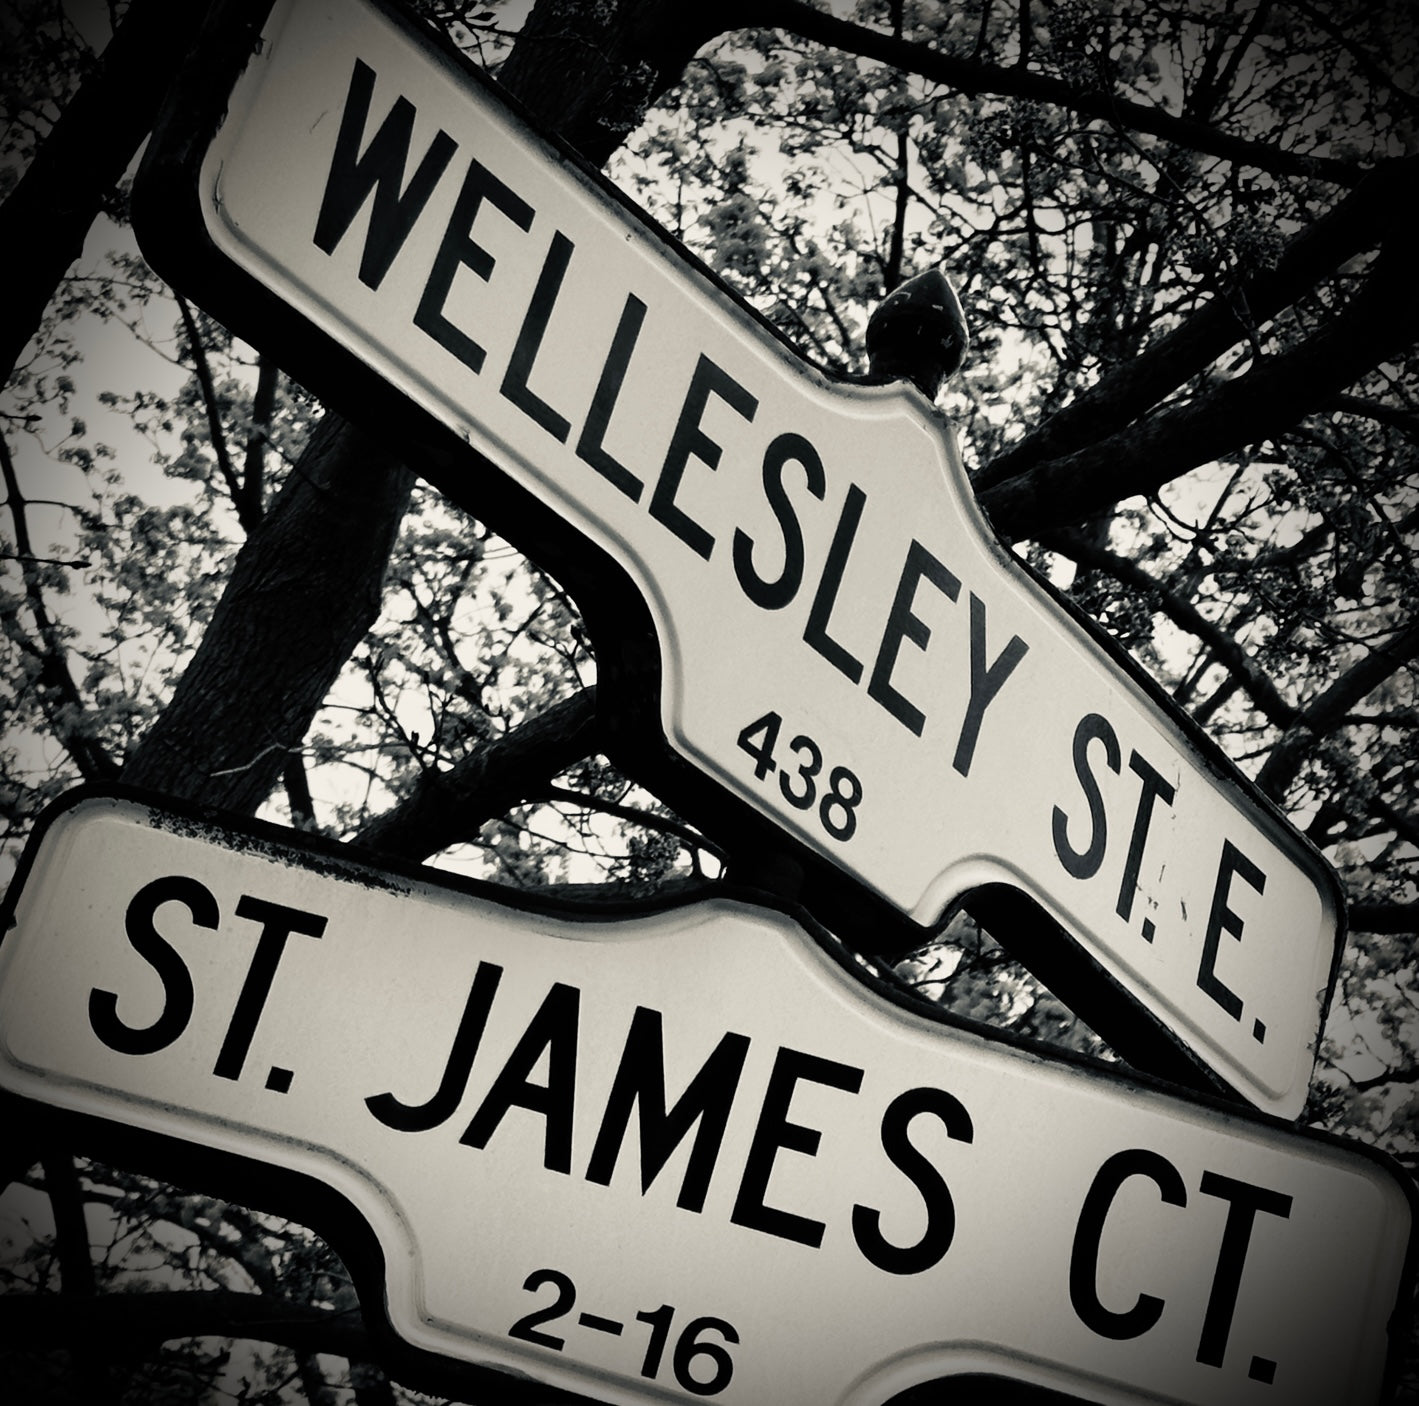 Wellesley & St James- Ceramic Coaster